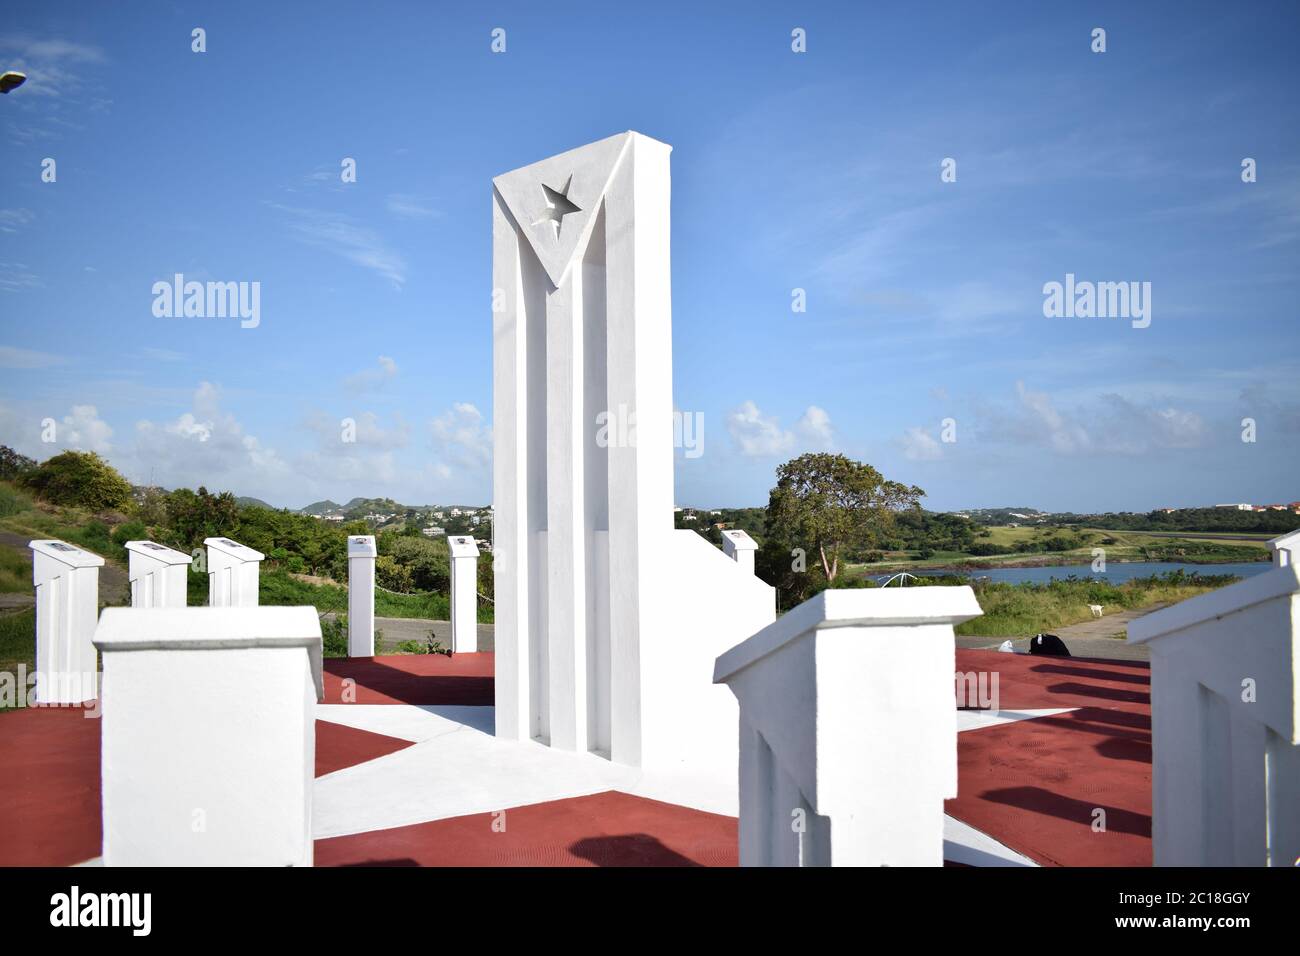 El monumento conmemorativo de Granada a los trabajadores cubanos que murieron durante la operación urgente Furia de 1983 en Estados Unidos. Foto de stock